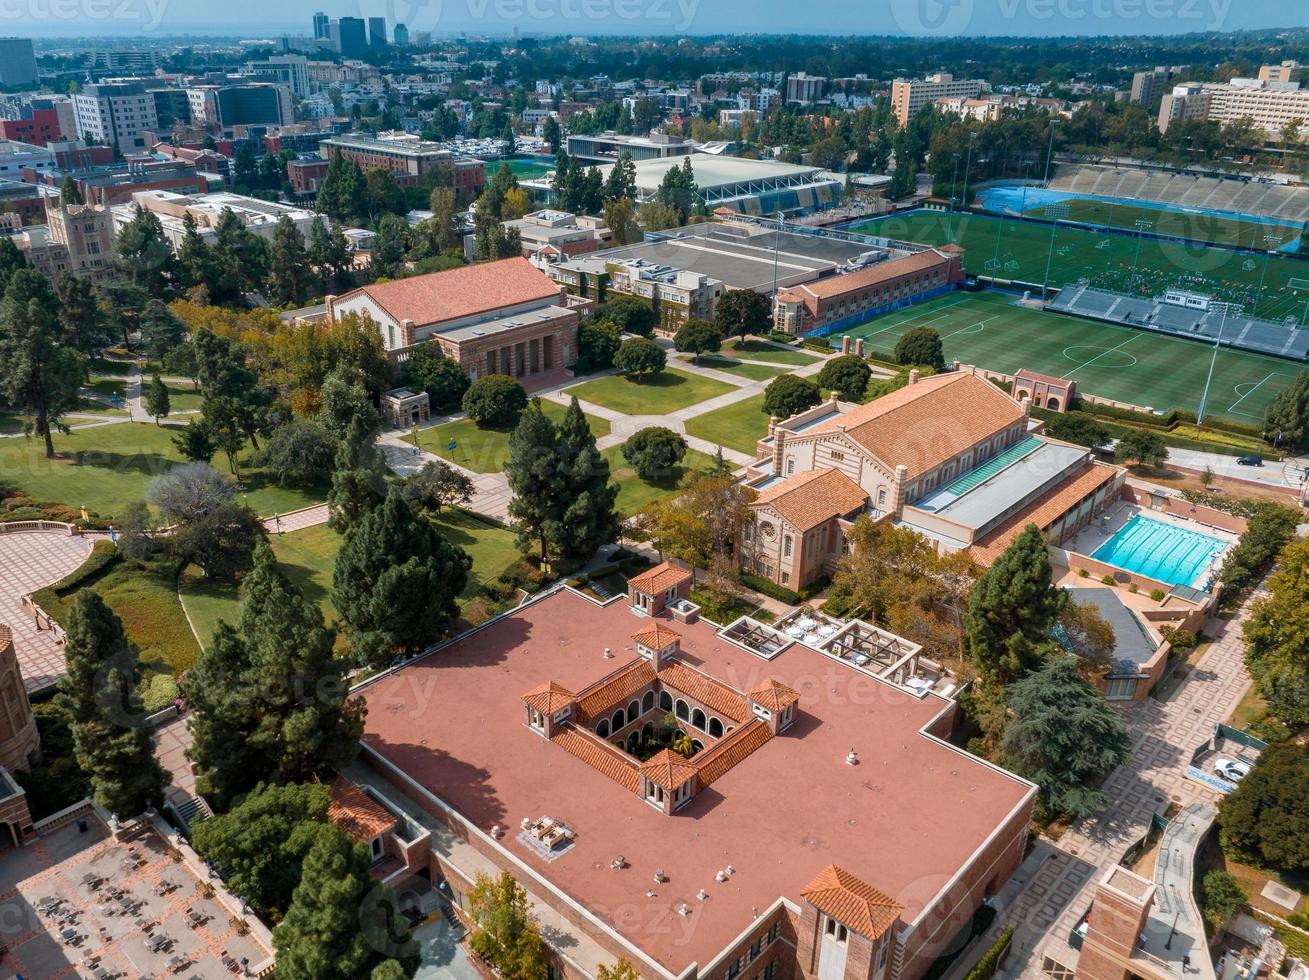 vista aerea del campus de la universidad de california, los angeles ucla foto